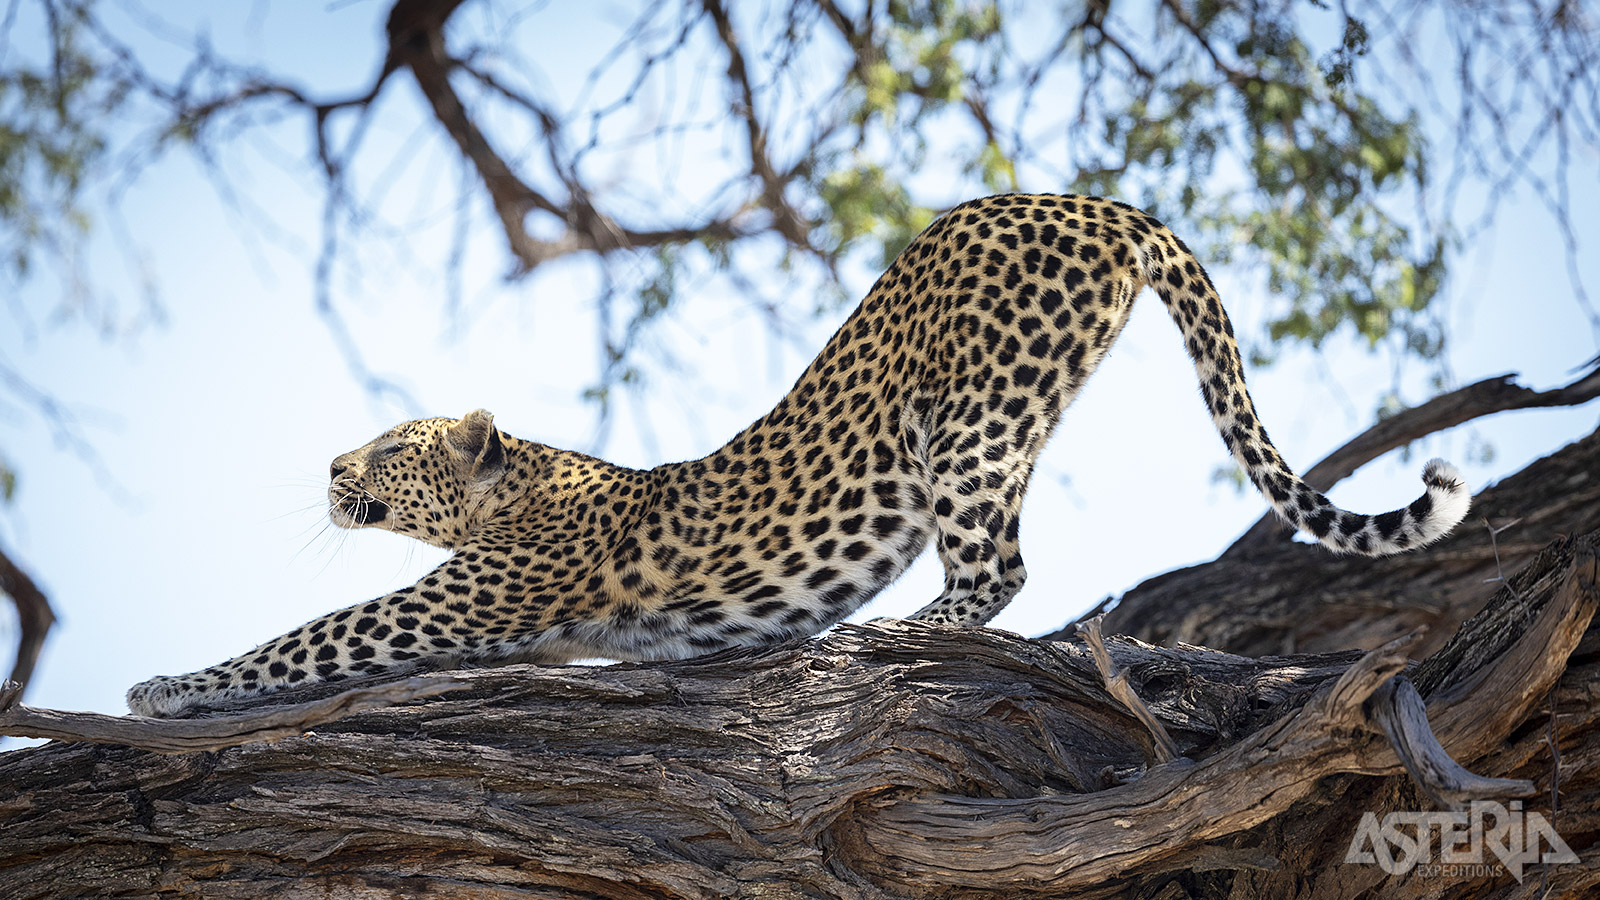 Naast de ‘meer voorkomende’ olifanten, leeuwen en giraffen komen net bijzondere zoogdieren in grotere aantallen voor in de Okavango Delta